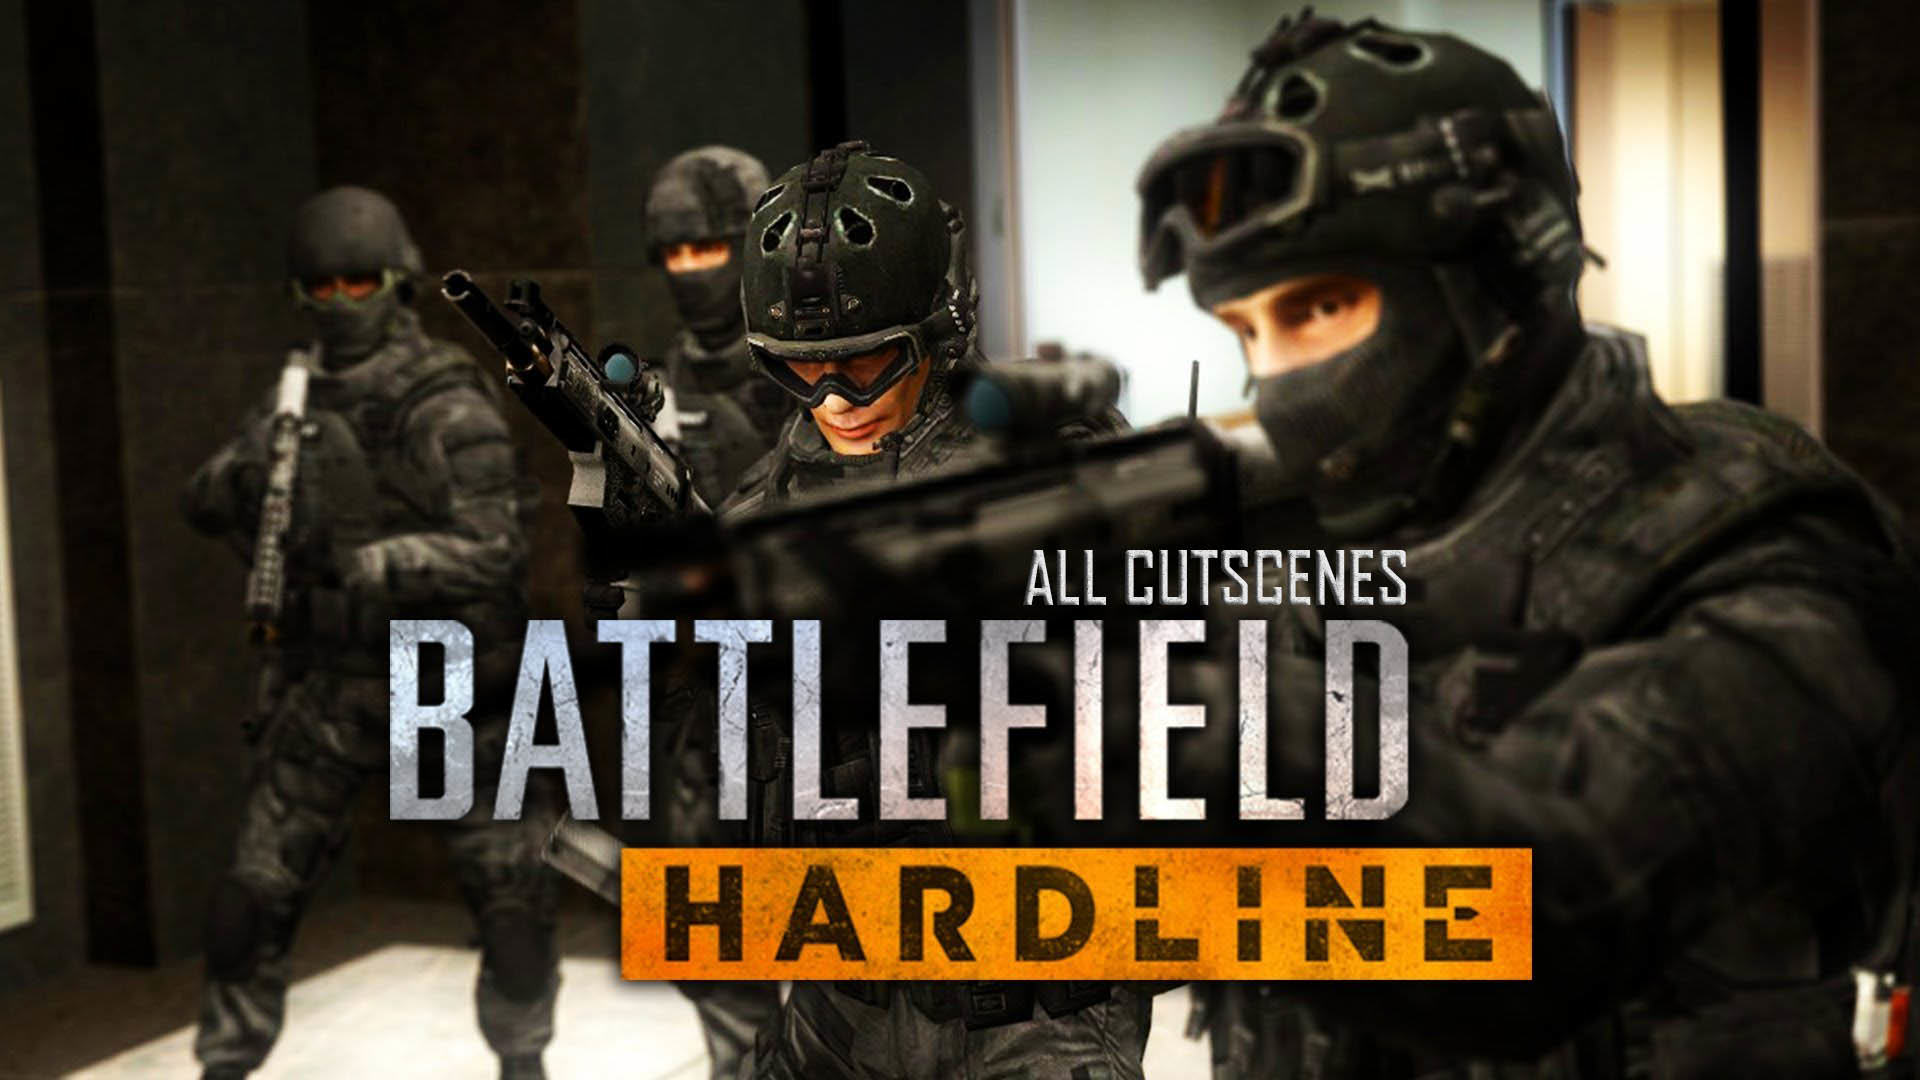 Battlefield Hardline Full Movie All Cutscenes 3